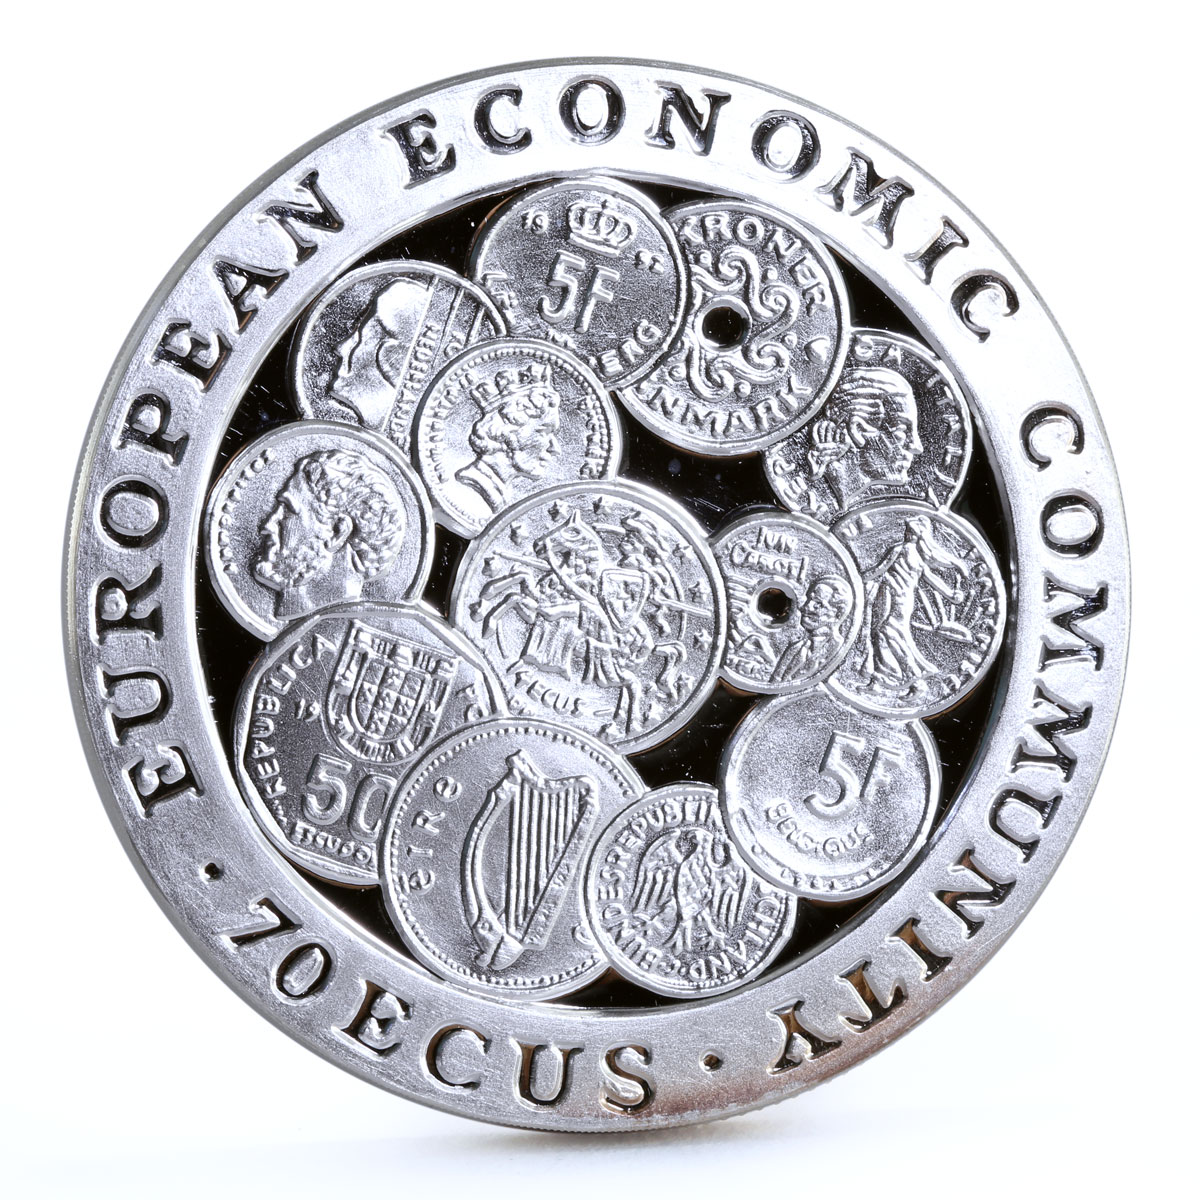 Gibraltar 70 ecu European Economic Community Coins of Europe silver coin 1993